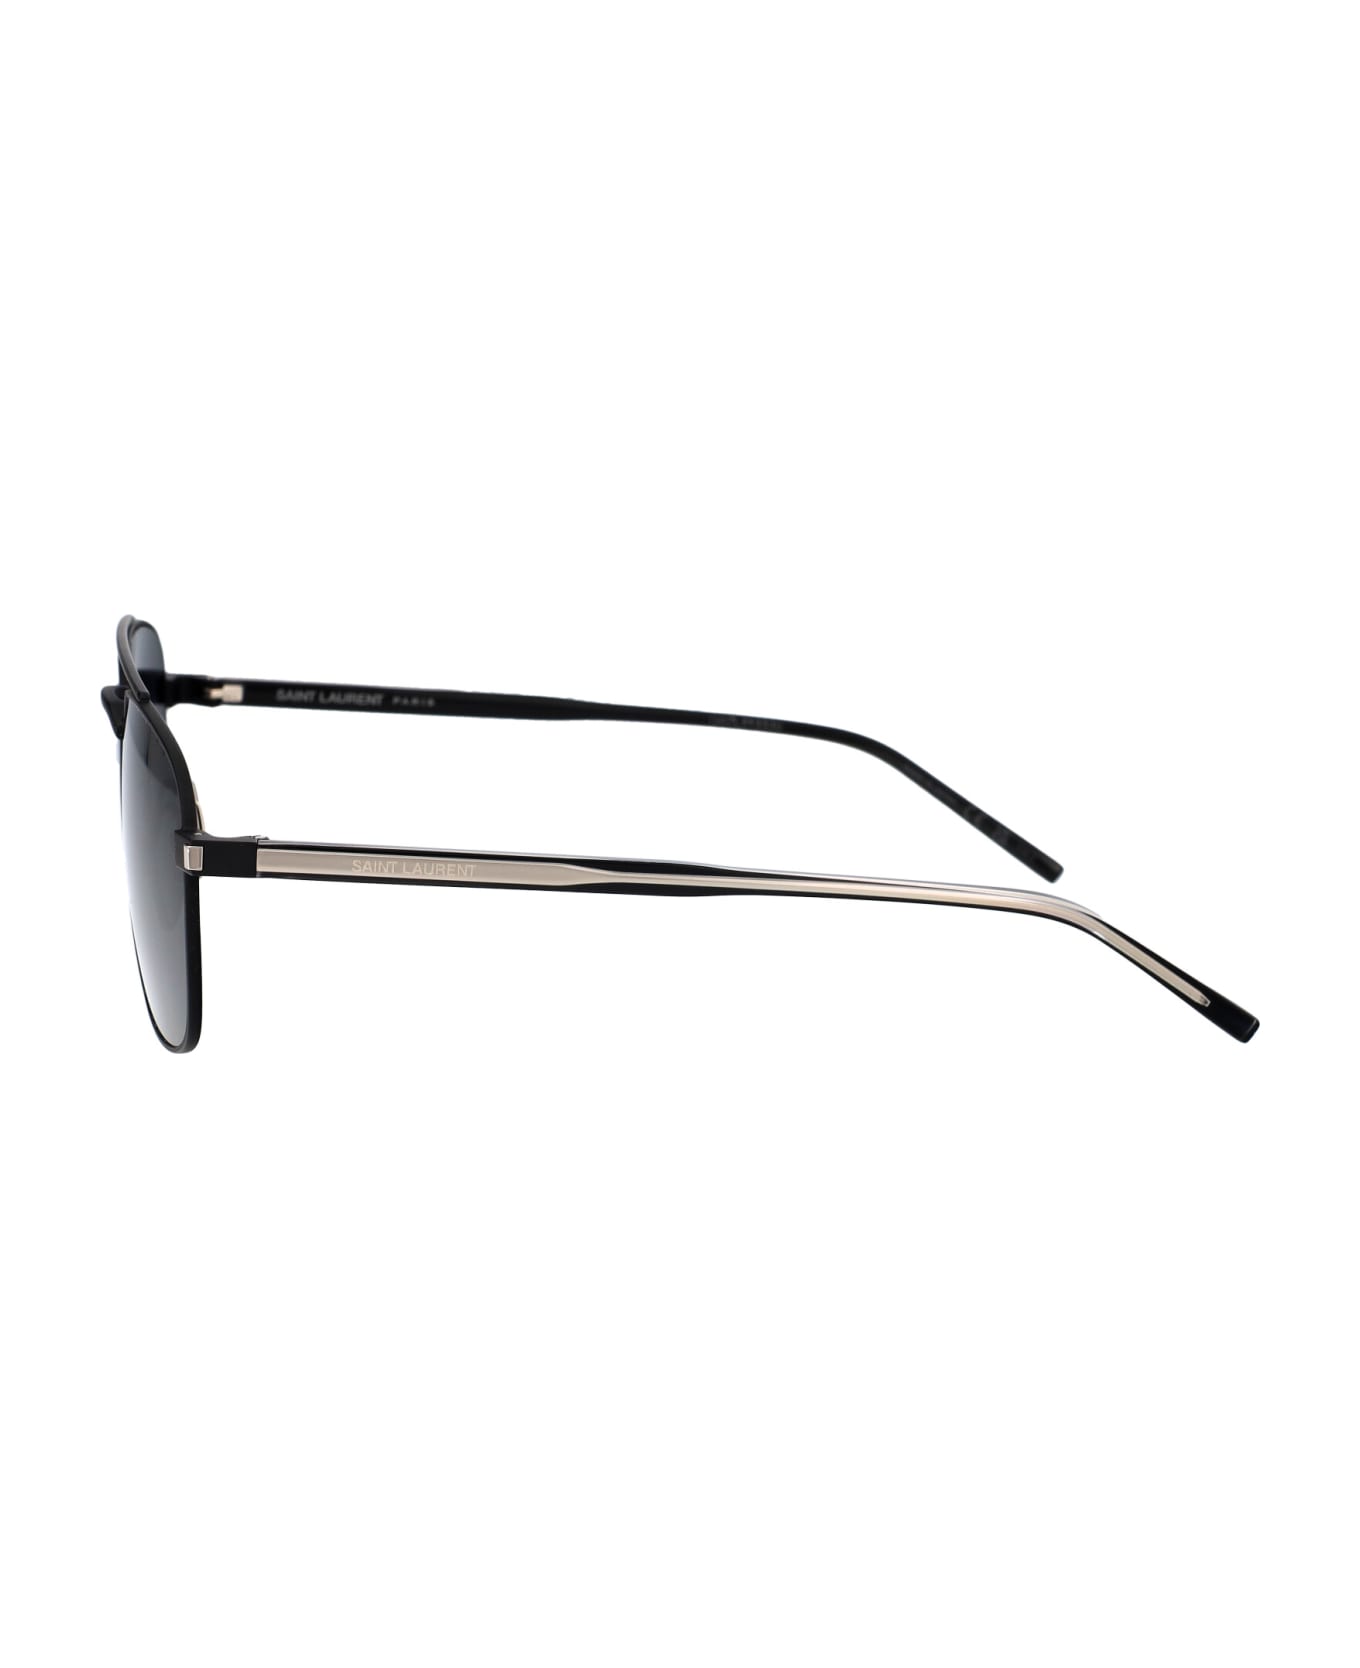 Saint Laurent Eyewear Sl 665 Sunglasses - 001 BLACK CRYSTAL BLACK